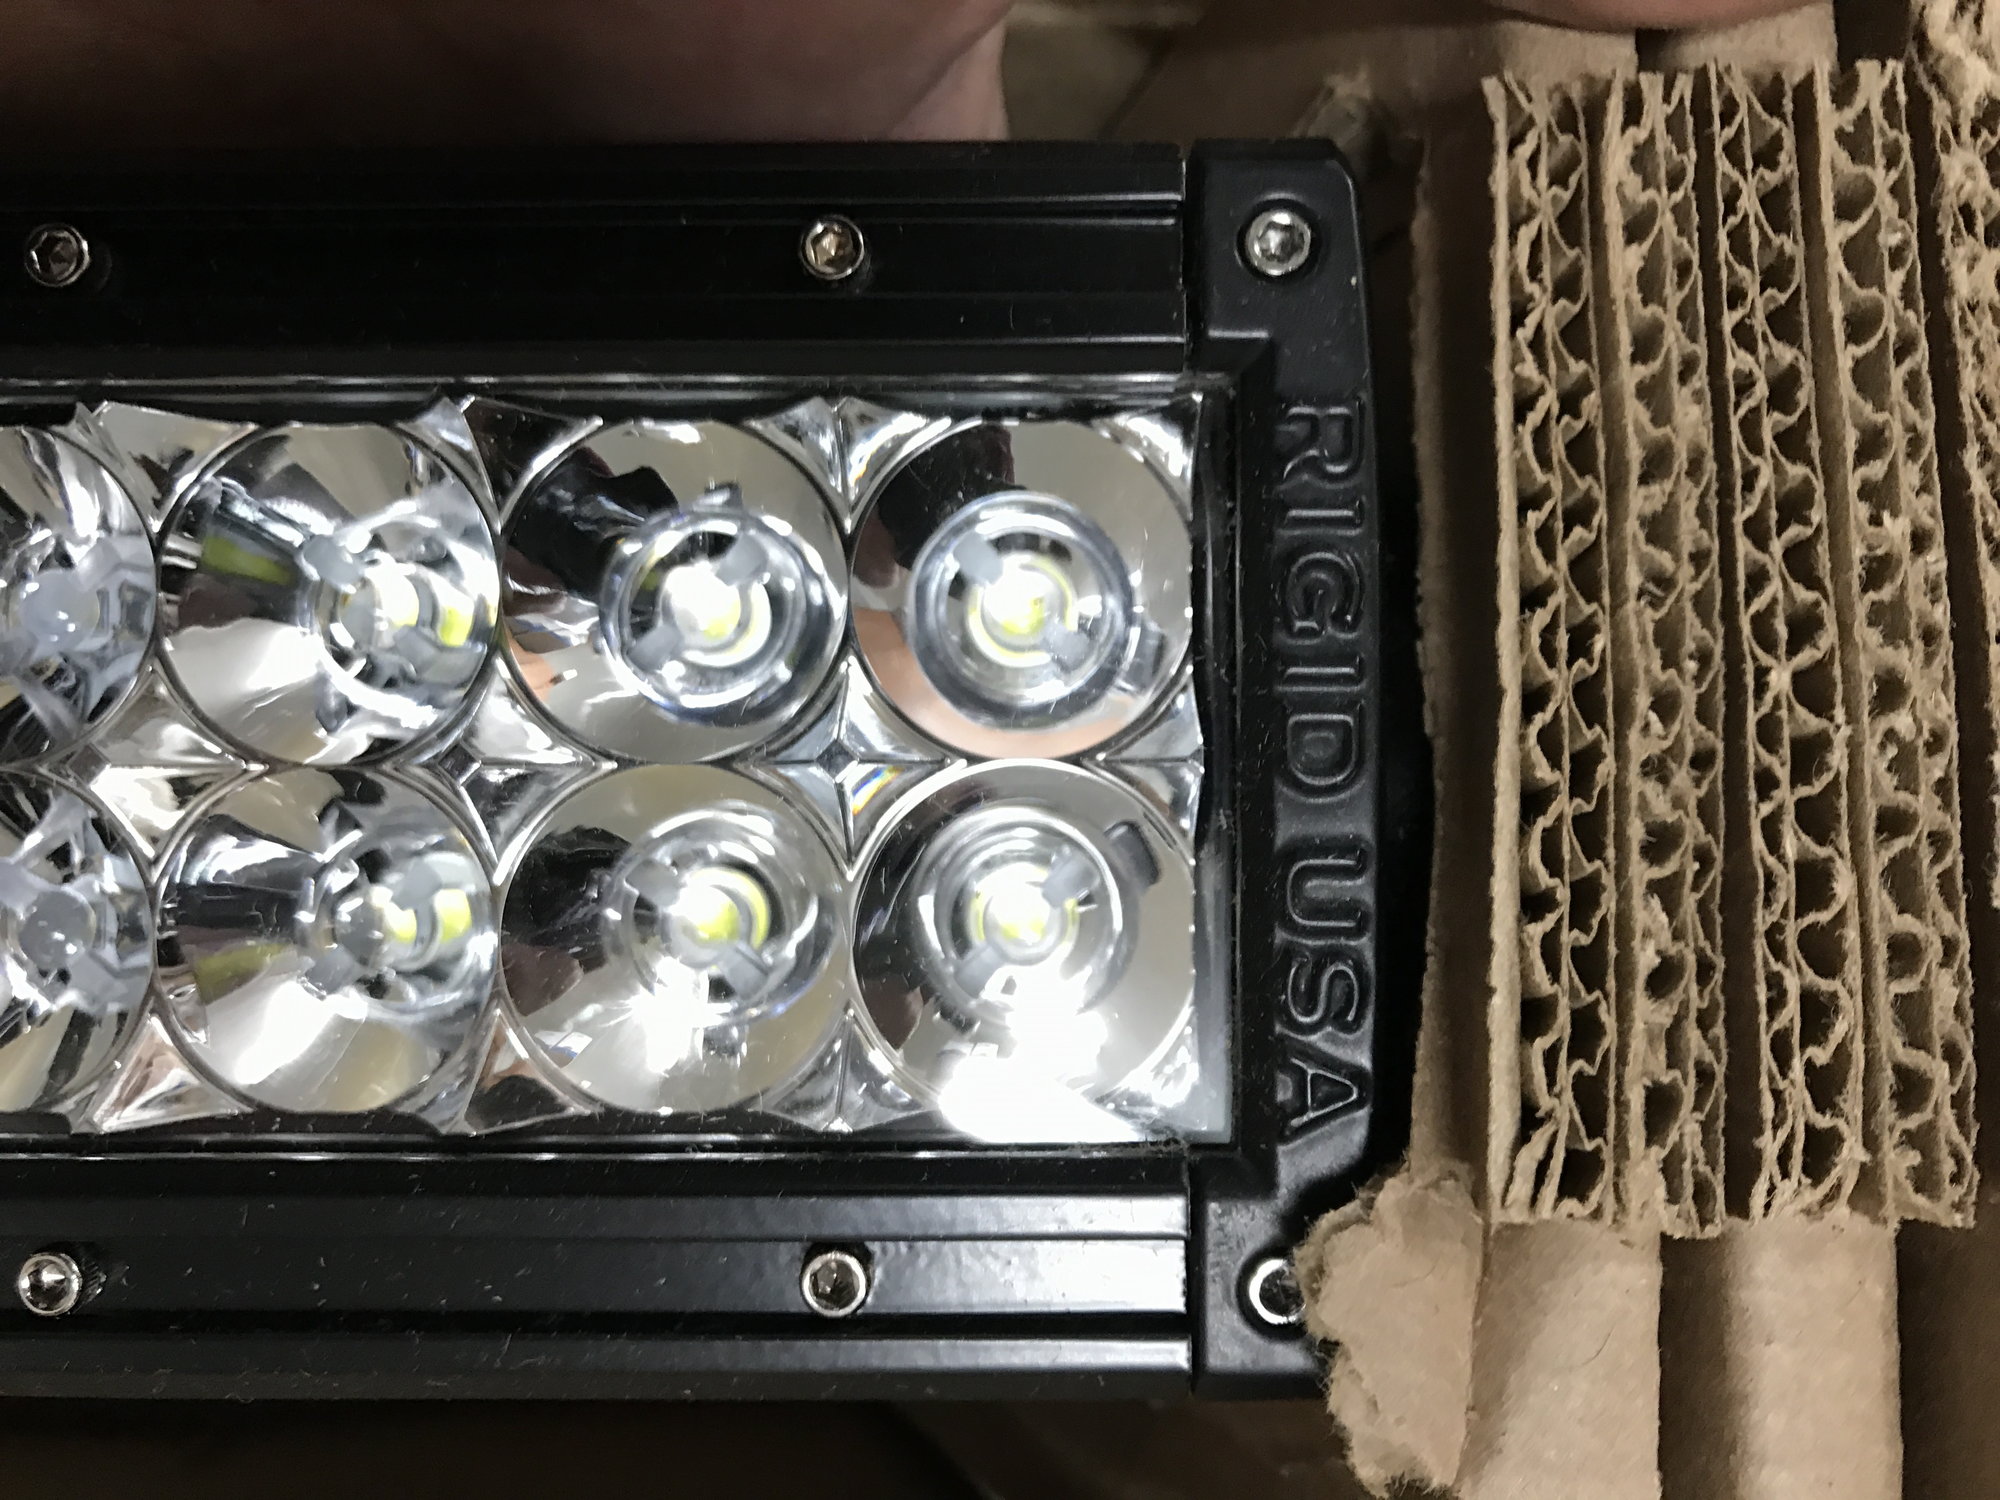 Lights - Rigid 50" combo led light bar - Used - San Diego, CA 92120, United States